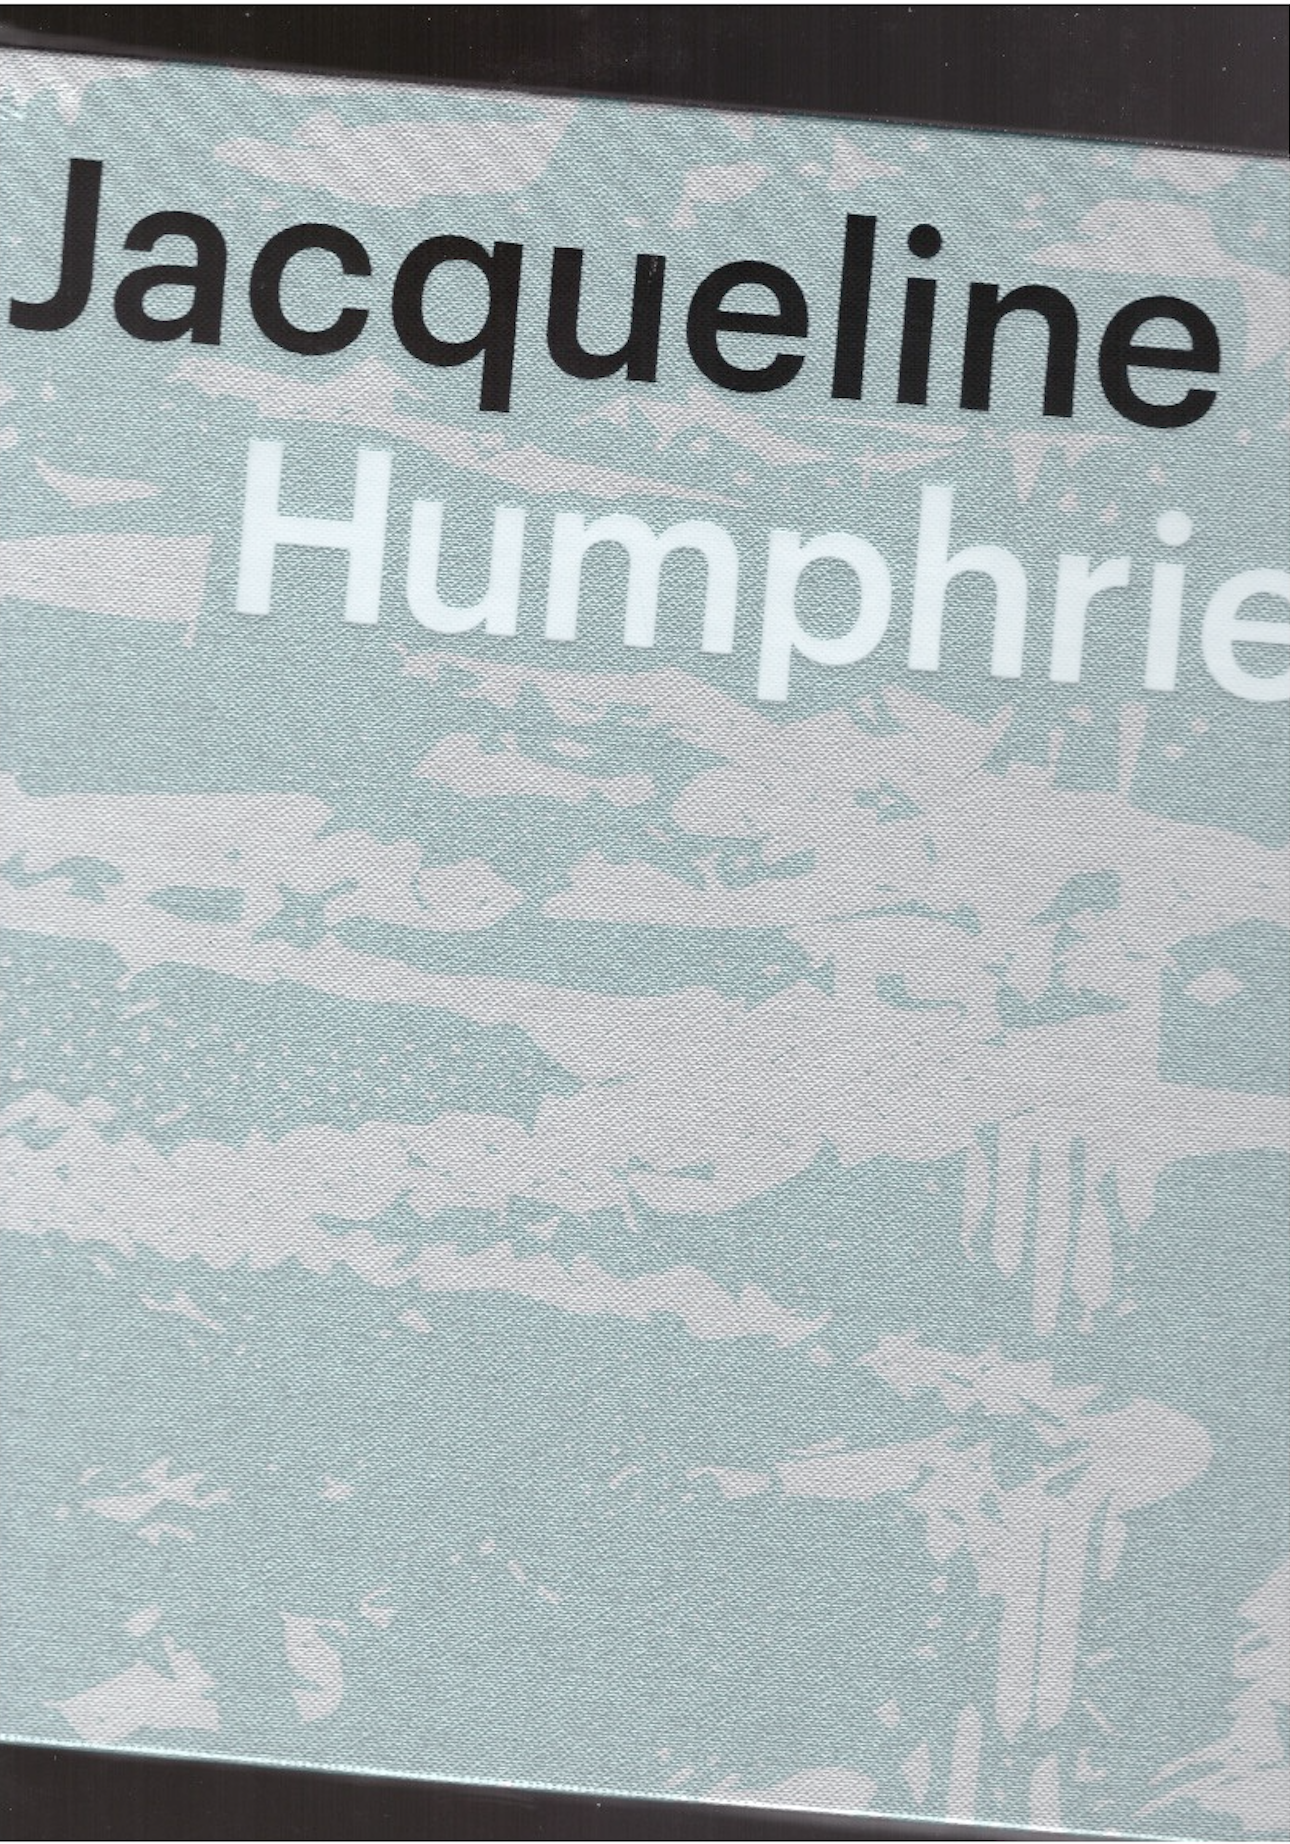 HUMPHRIES, Jacqueline  - Jacqueline Humphries. jH?1:)